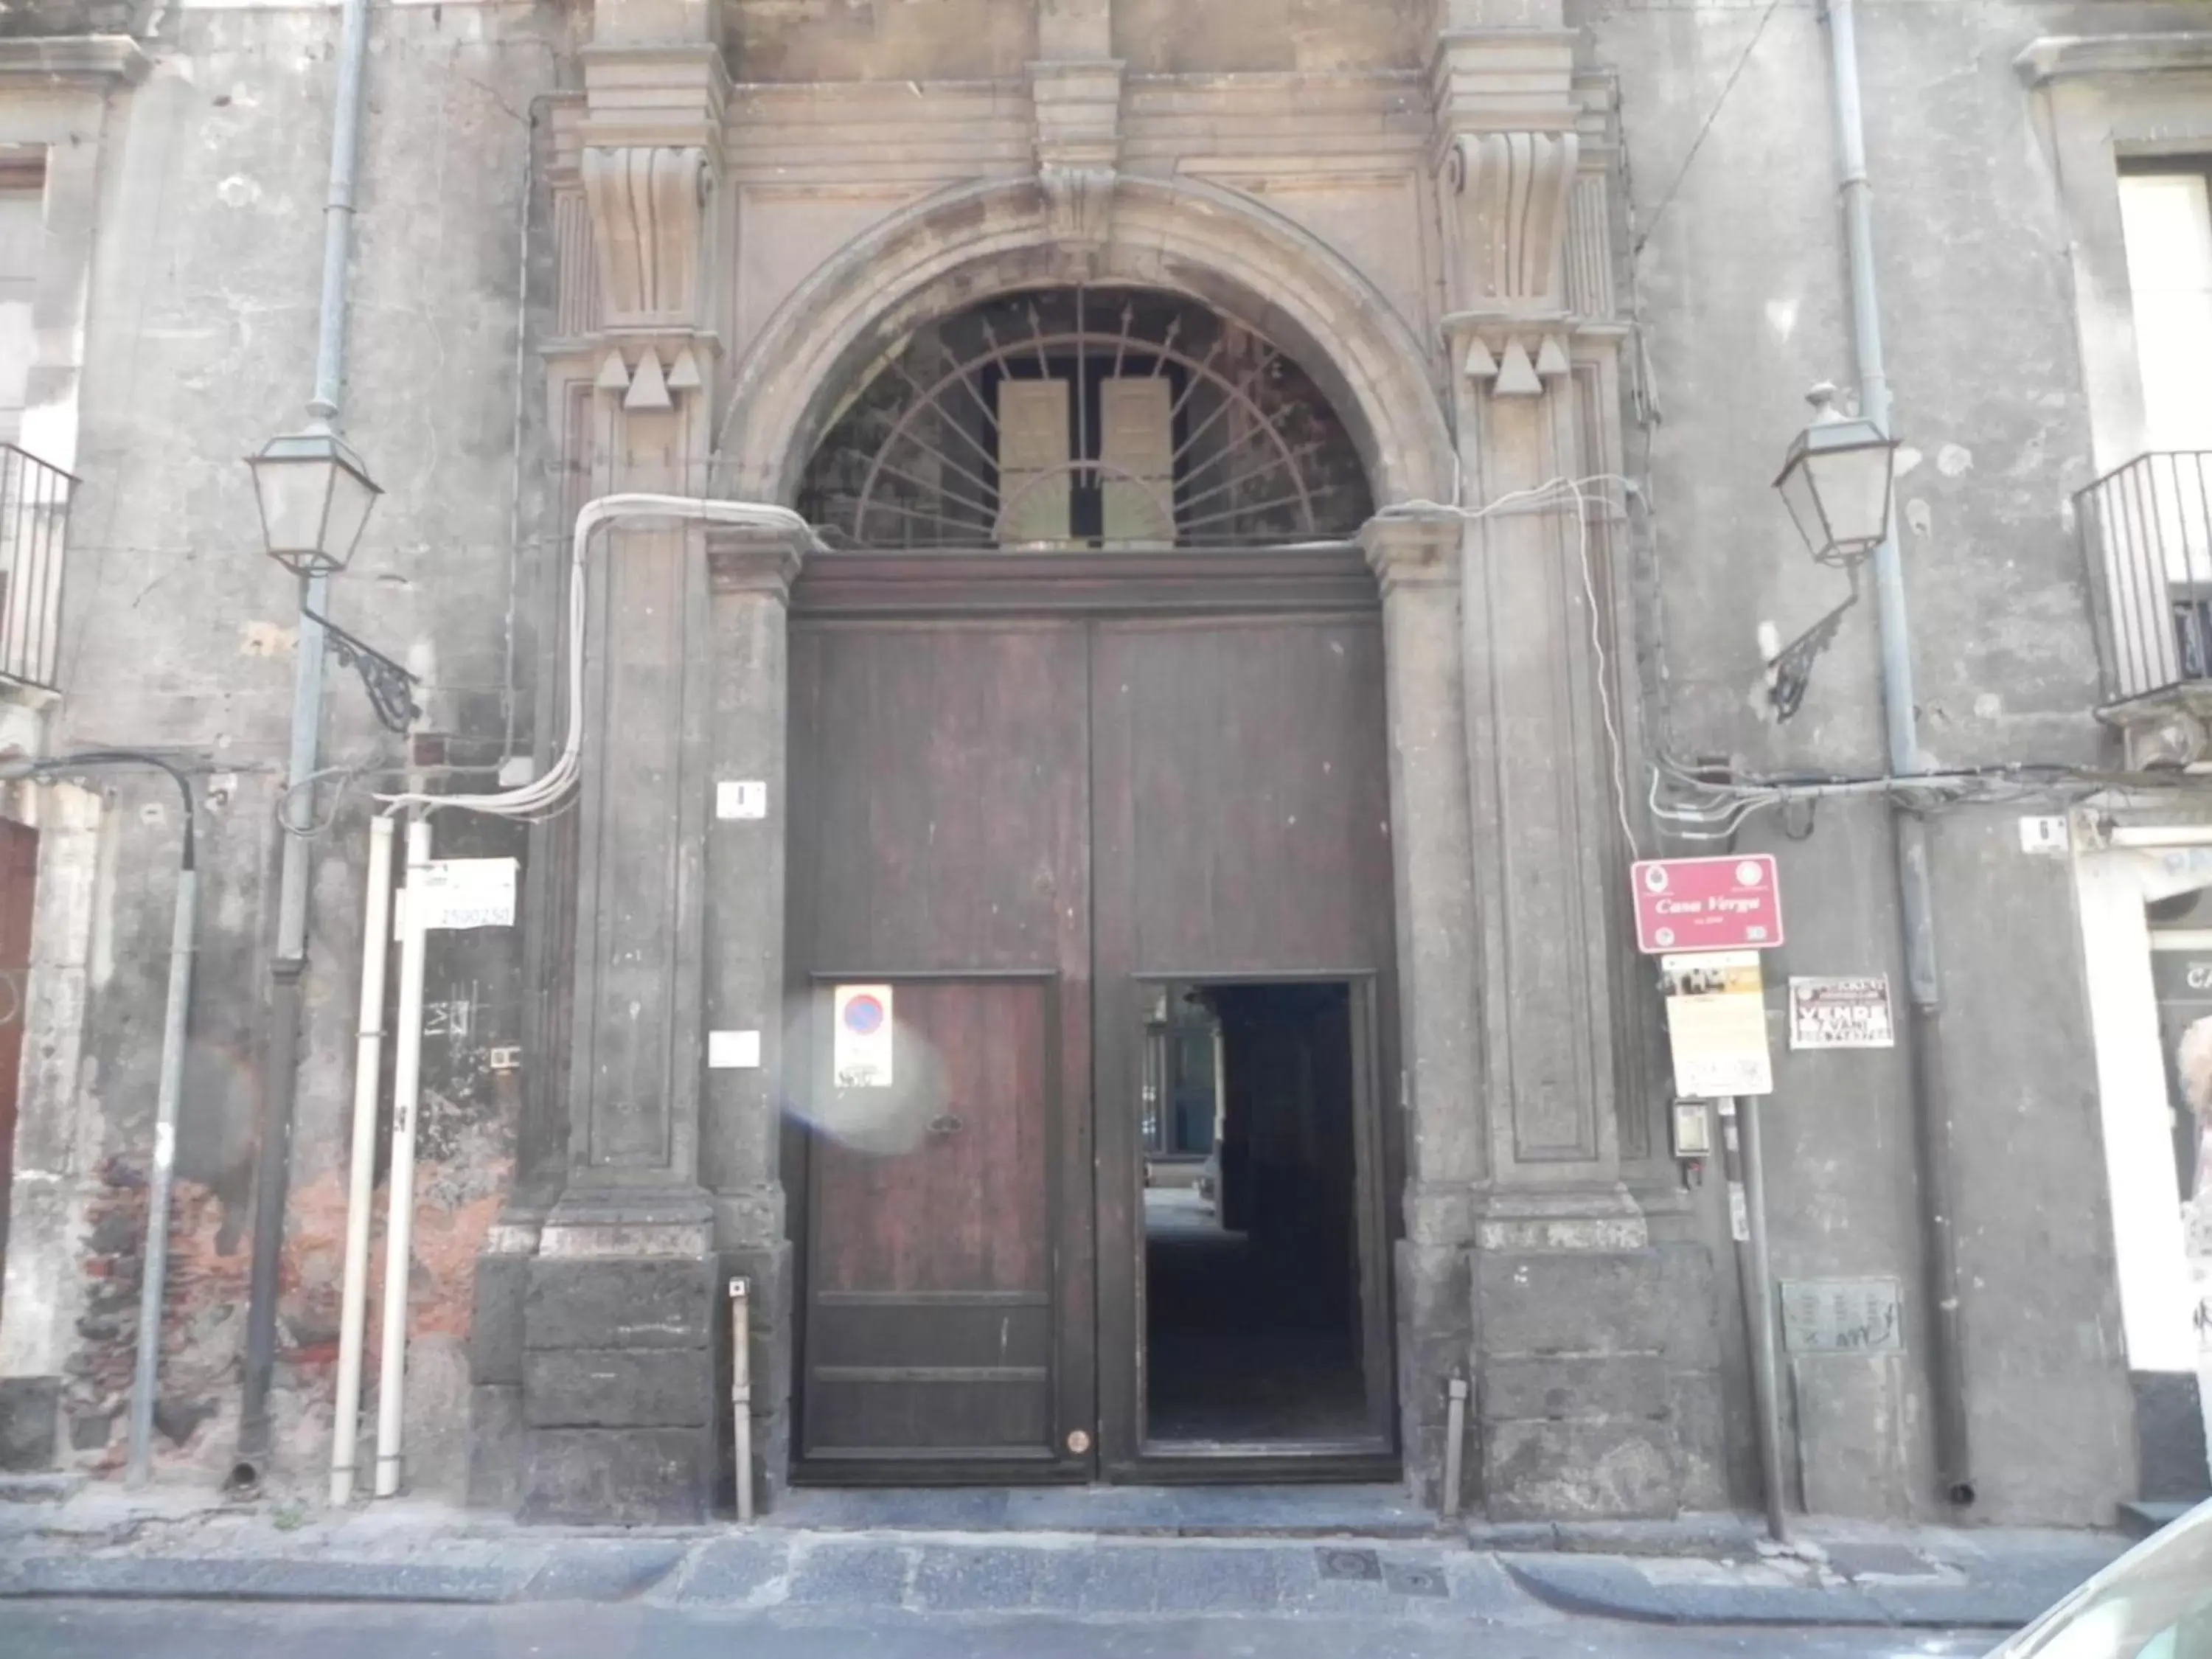 Property building, Facade/Entrance in Palazzo del Verga